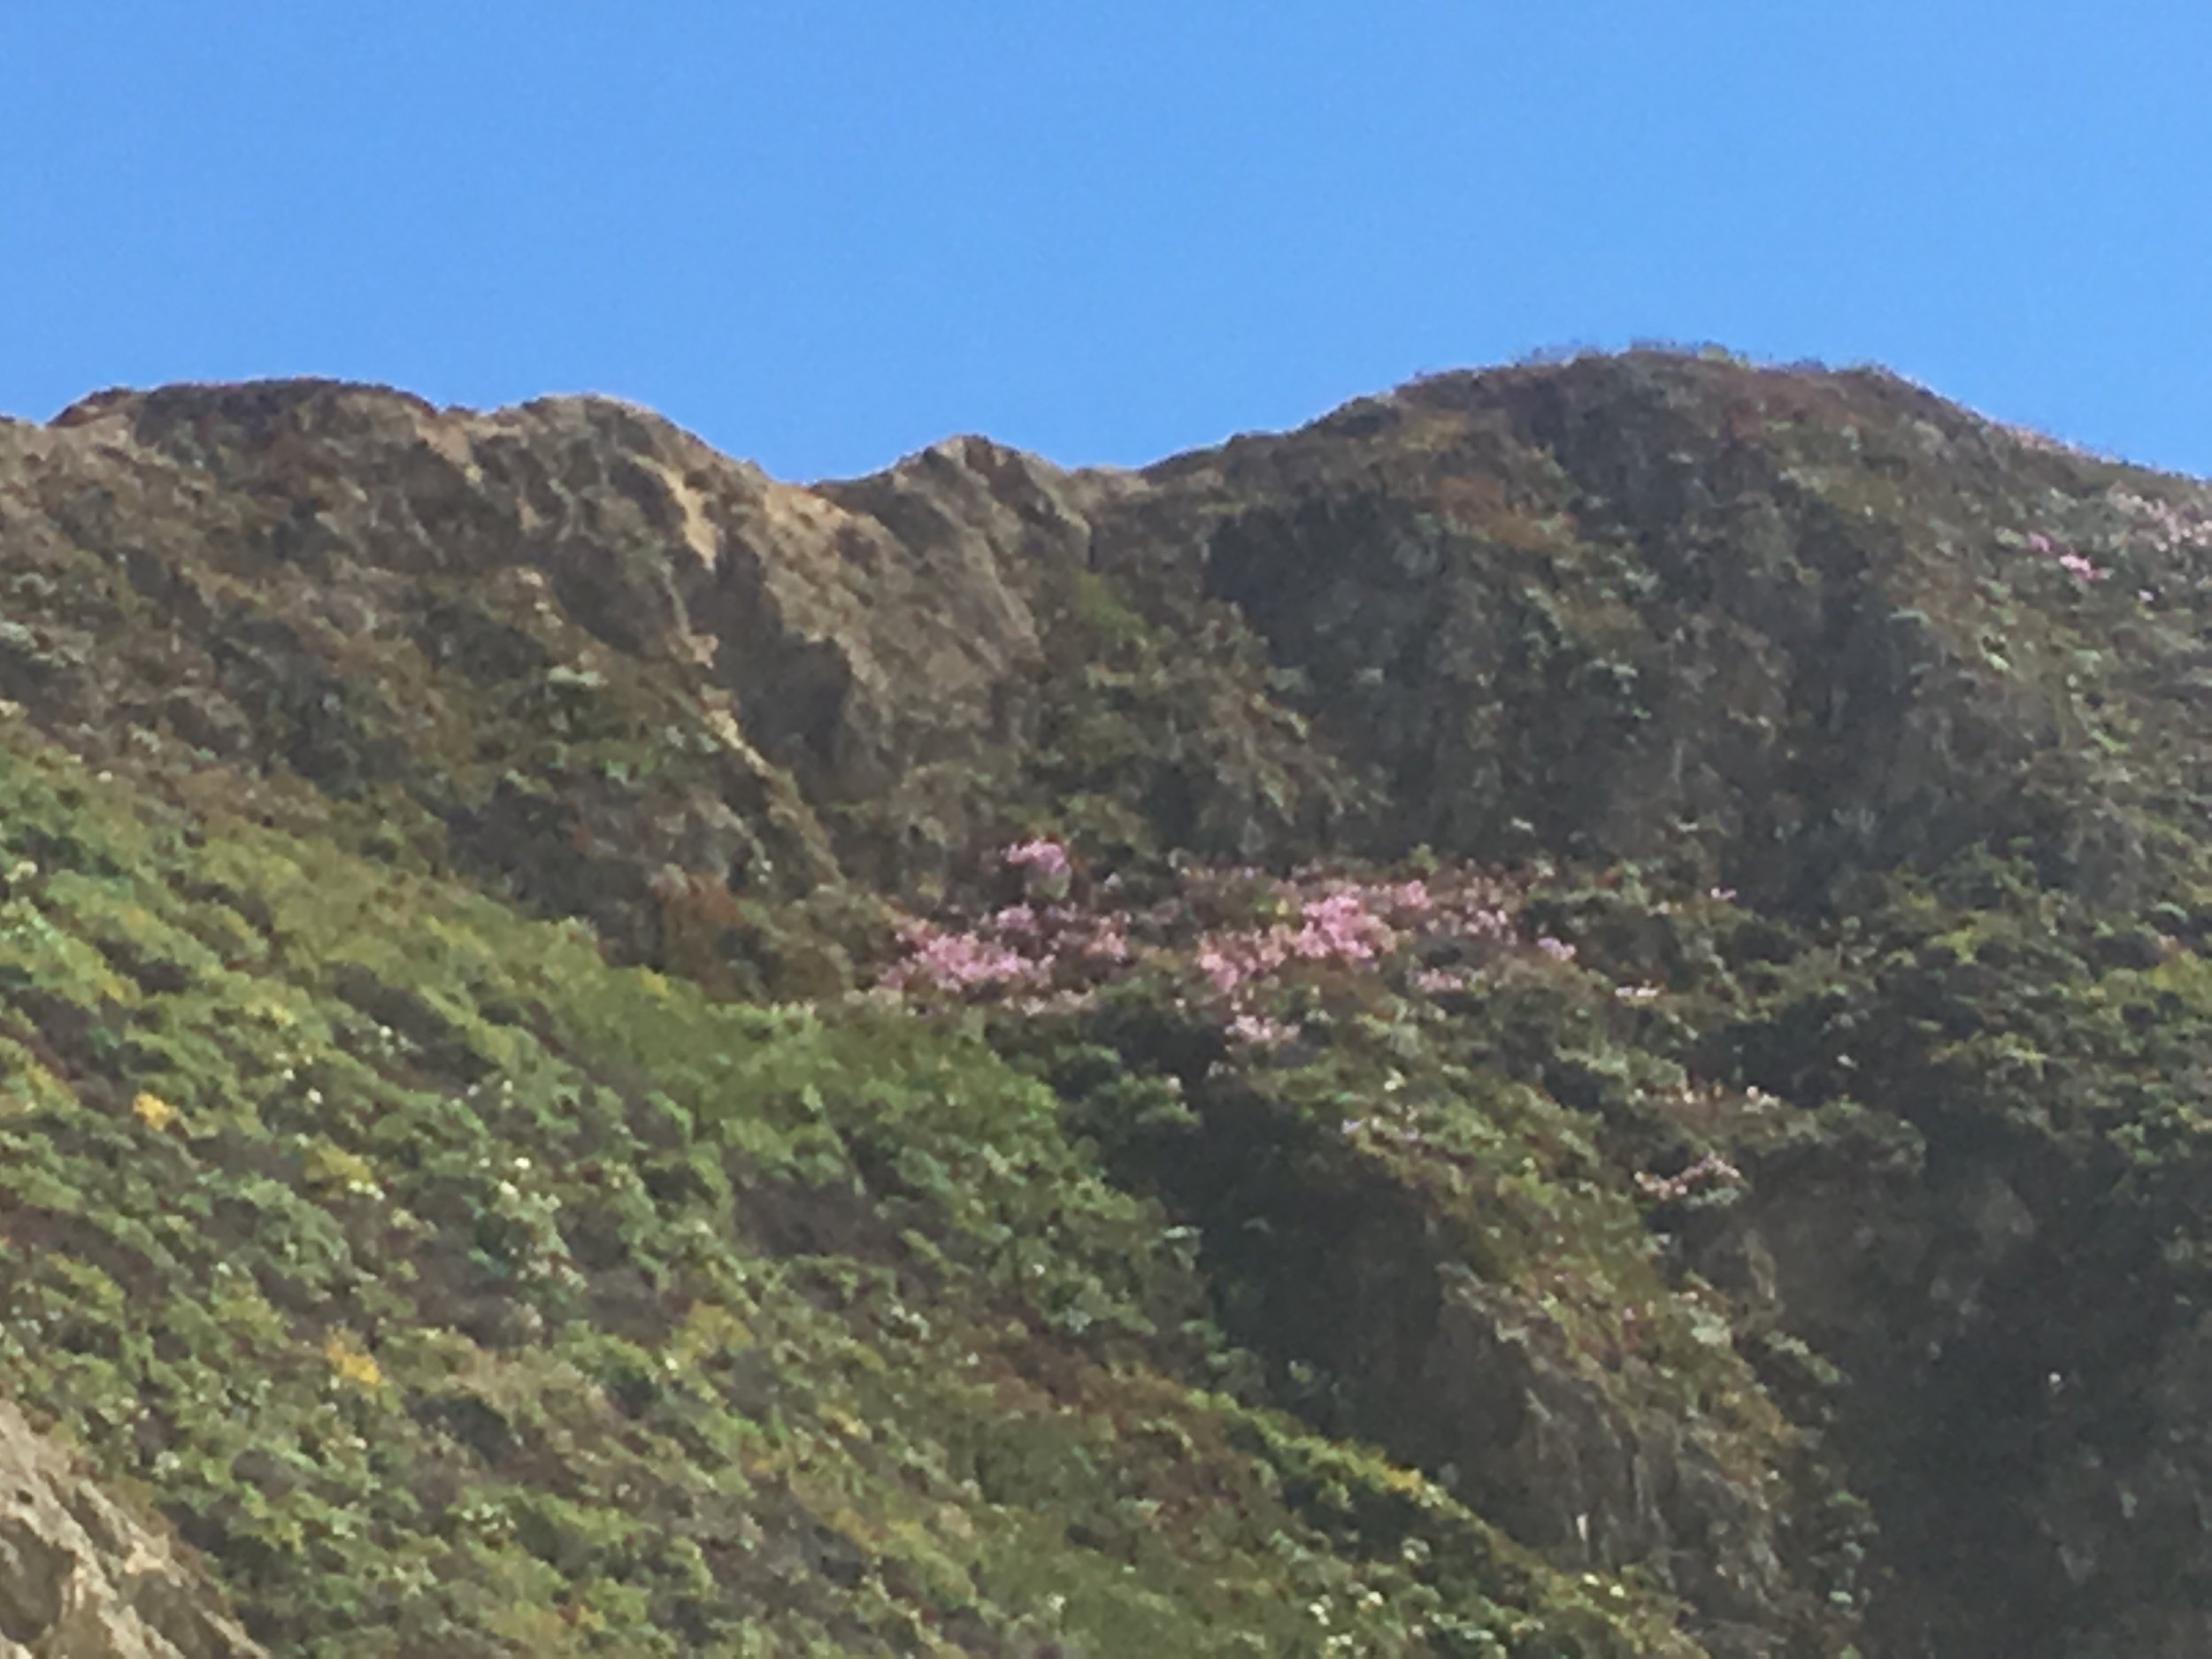 Purple mountain flowers